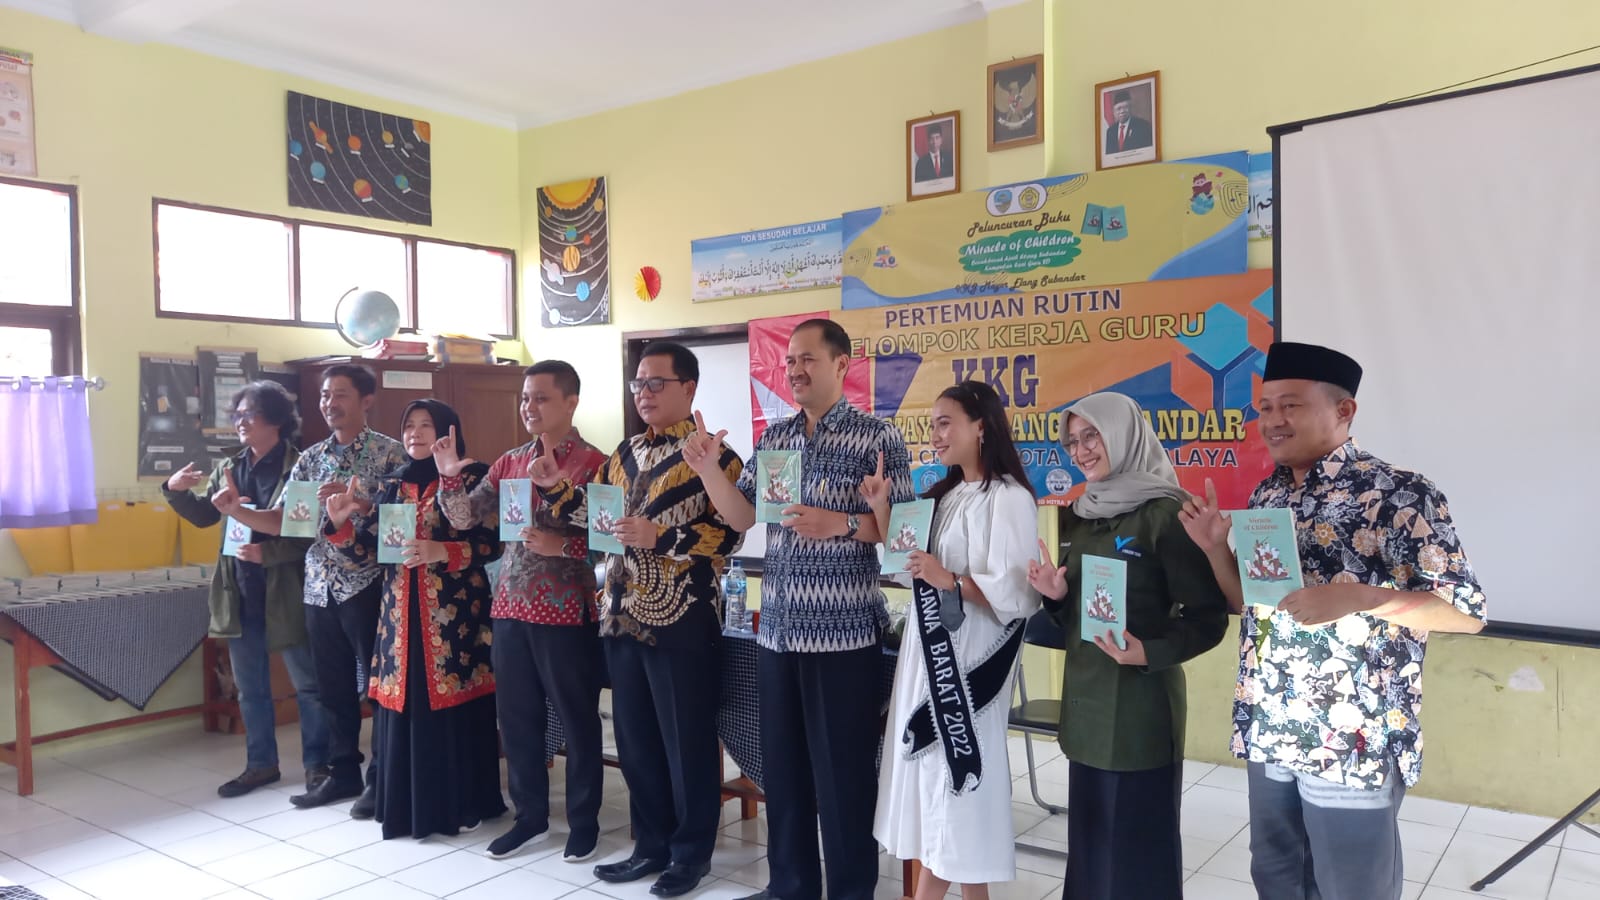 Kelompok Kerja Guru di Tasik Luncurkan Buku Miracle of Children Bocah-bocah Ajaib Elang Subandar